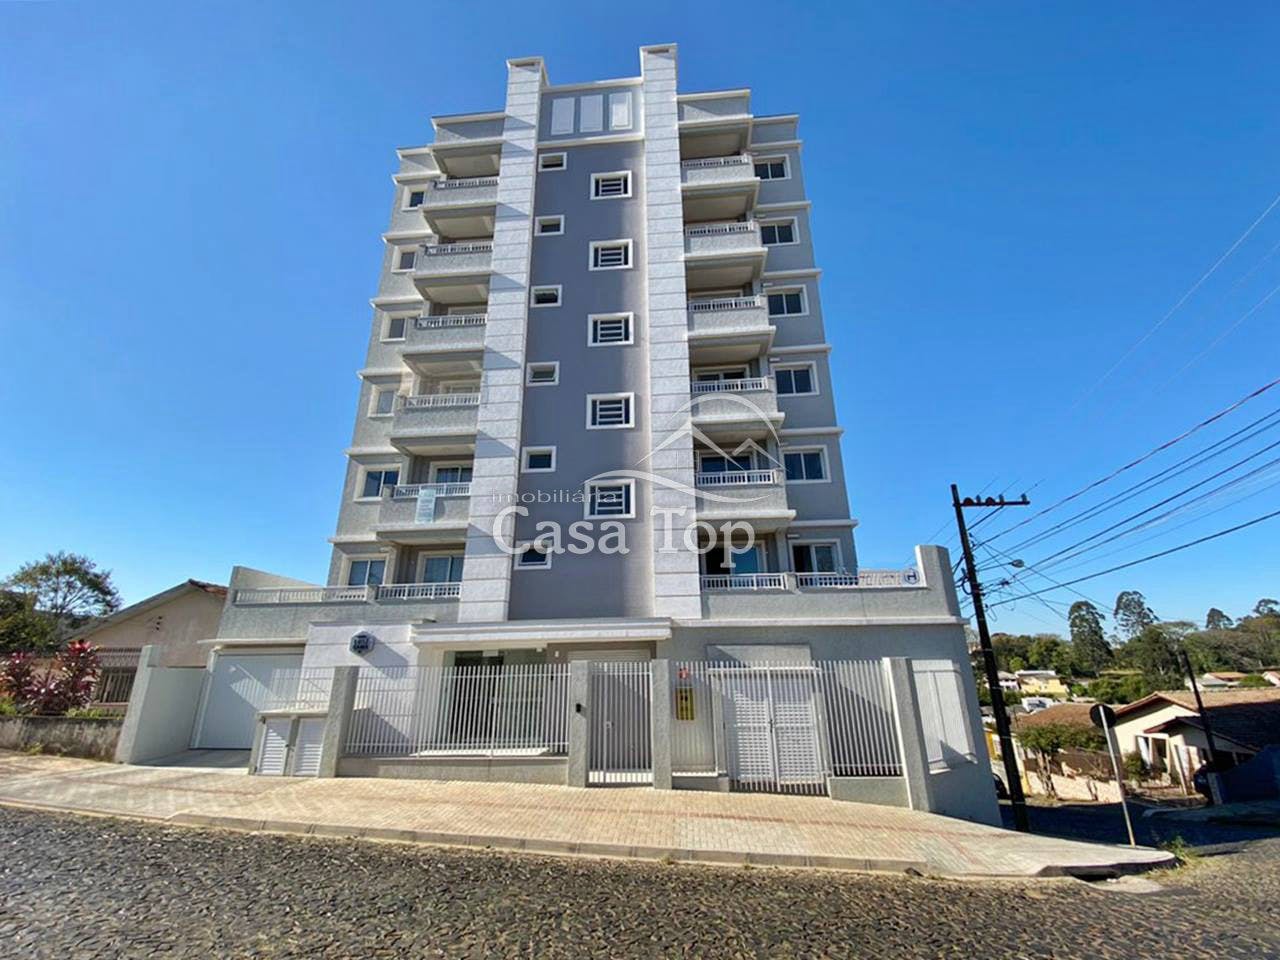 Apartamento à venda Oficinas - Edifício Luiz Gama